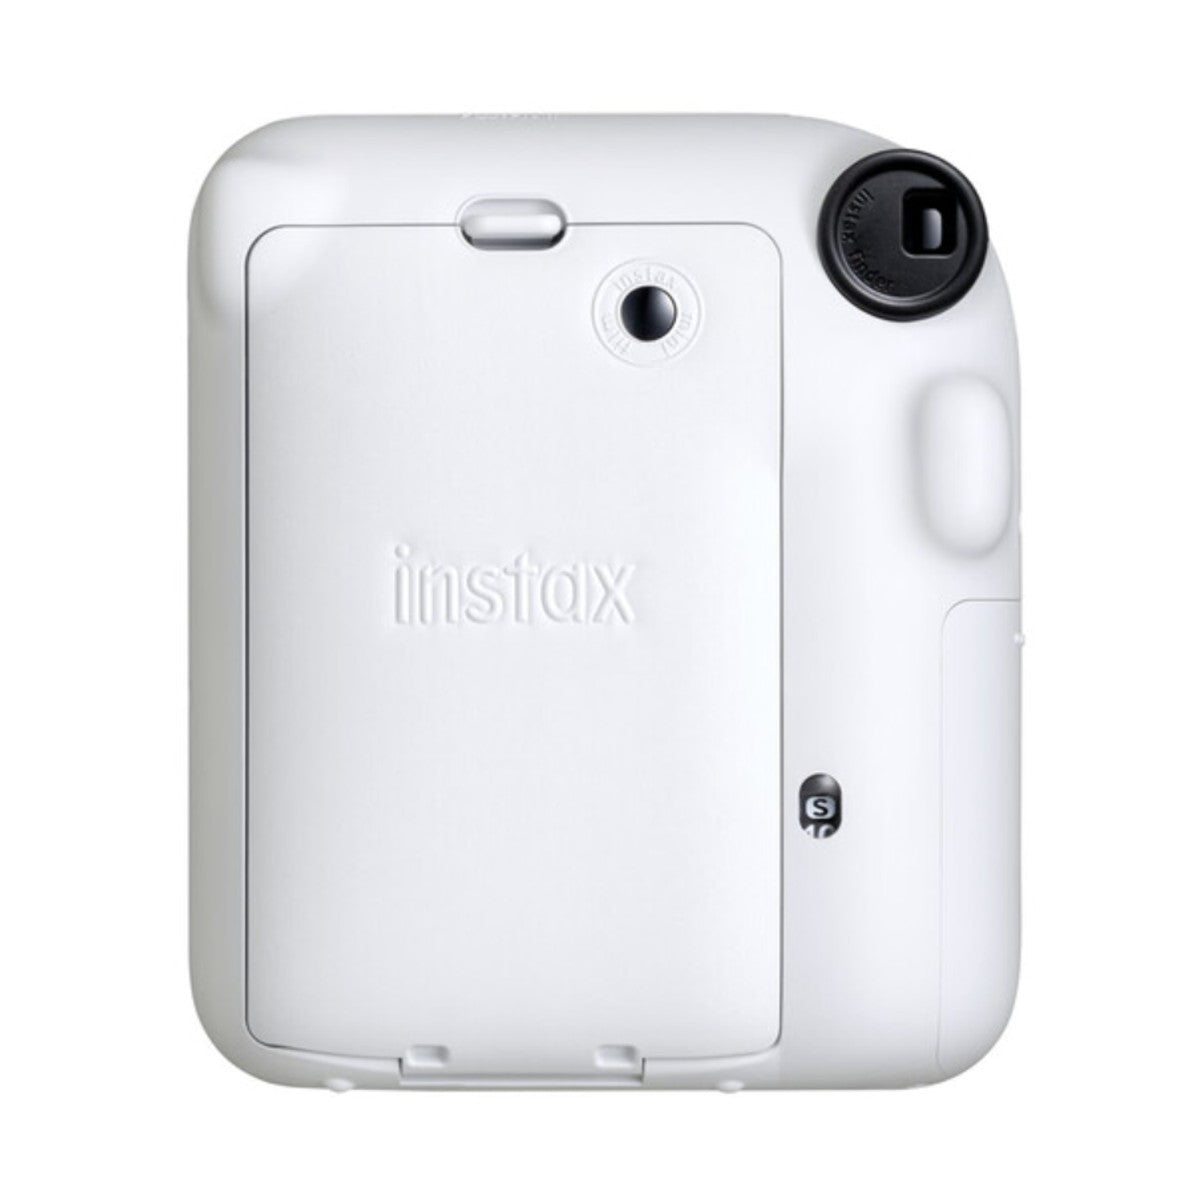 Fujifilm INSTAX MINI 12 Instant Film Camera (Clay White)